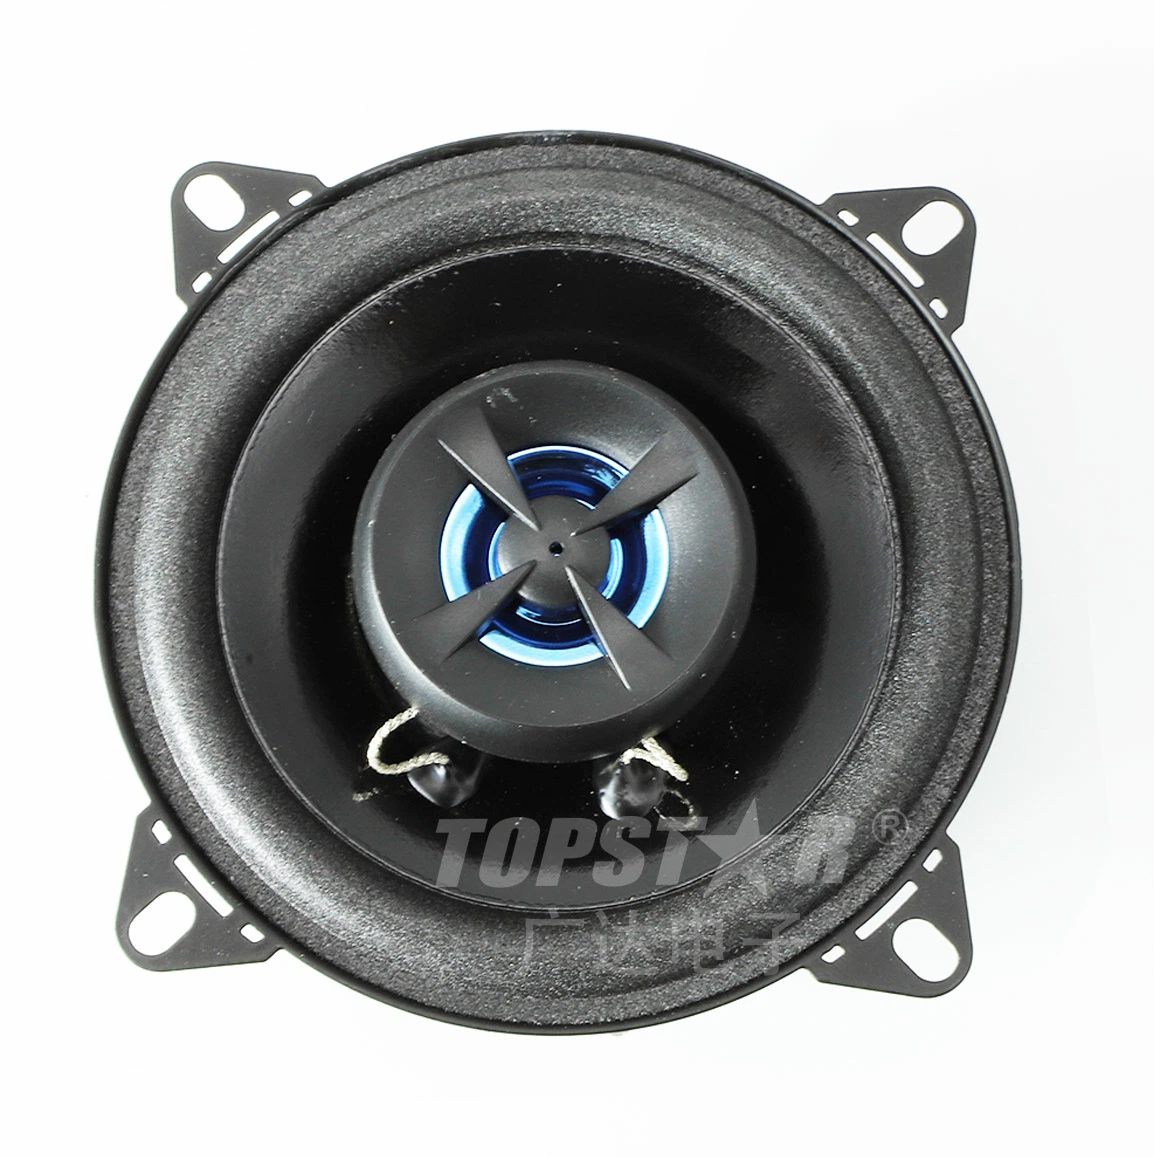 Accesorio de altavoz estéreo para el coche altavoz de audio profesional para el coche Altavoz de sonido para coche mini